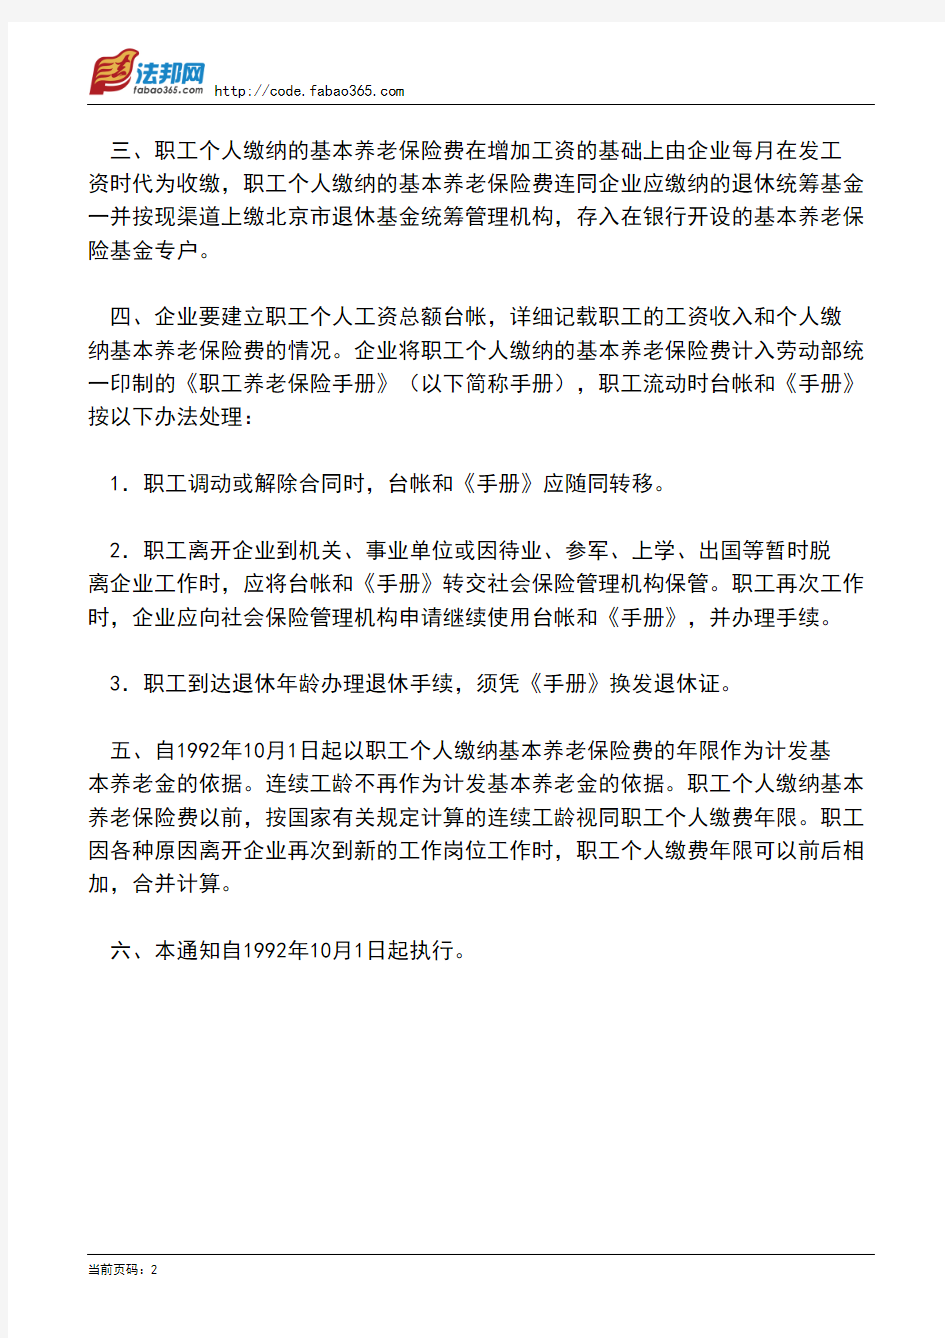 北京市劳动局关于企业职工个人缴纳基本养老保险费有关问题的通知